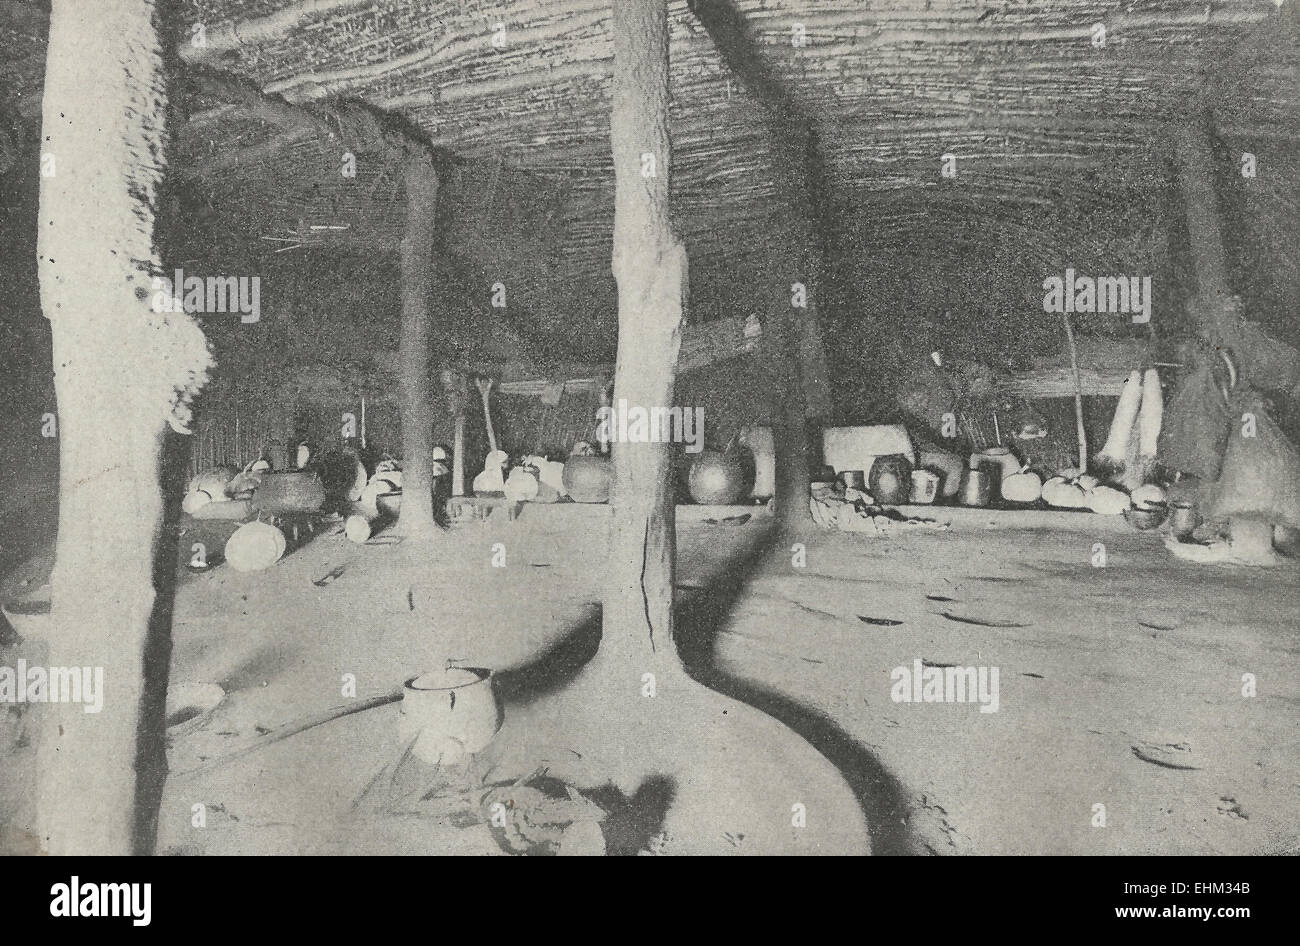 Innere des Native Hütte in Südafrika - Großformat mit einigen Skins und Kriegswaffen, ca. 1898 Stockfoto